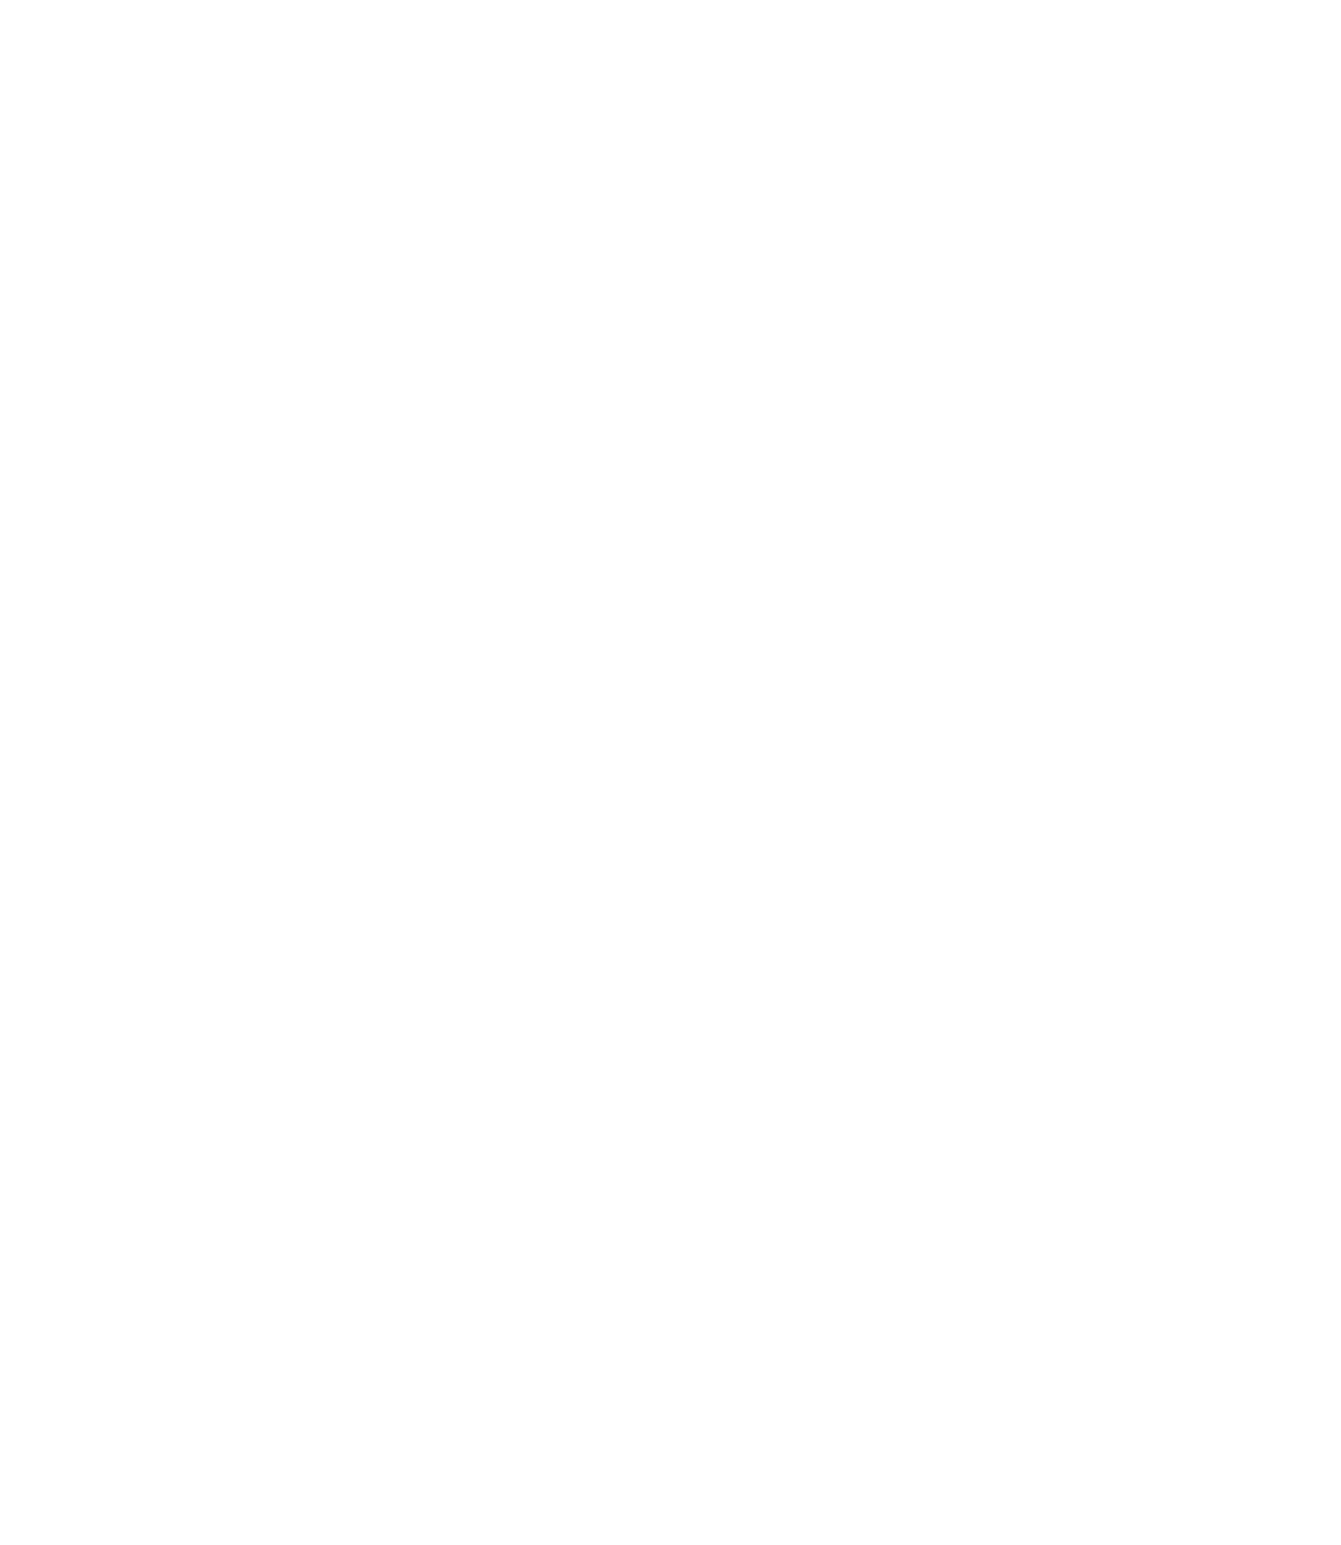 Vitol logo for dark backgrounds (transparent PNG)